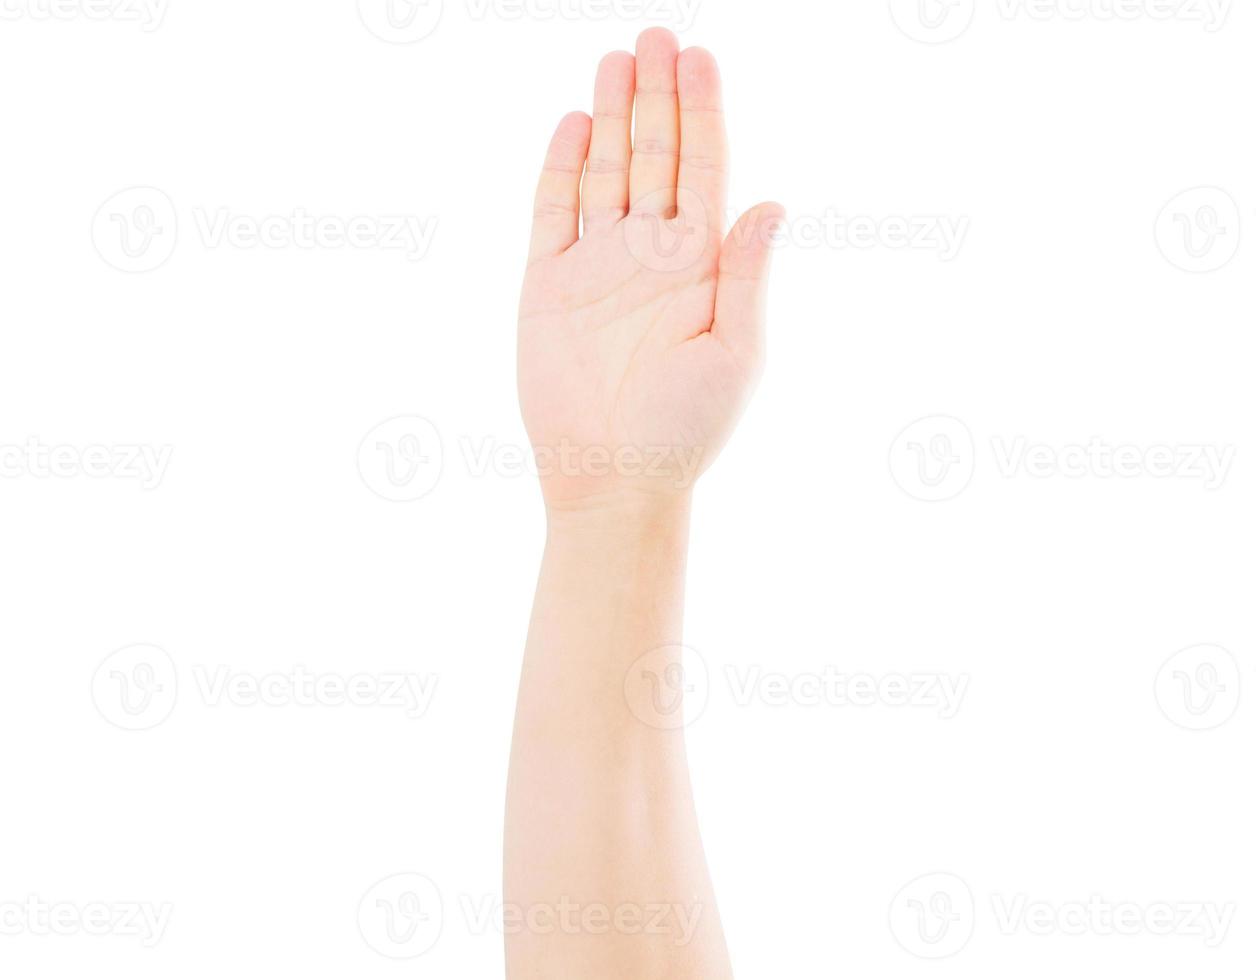 männliche Hand isoliert auf weißem Hintergrund, Abstimmungshand foto